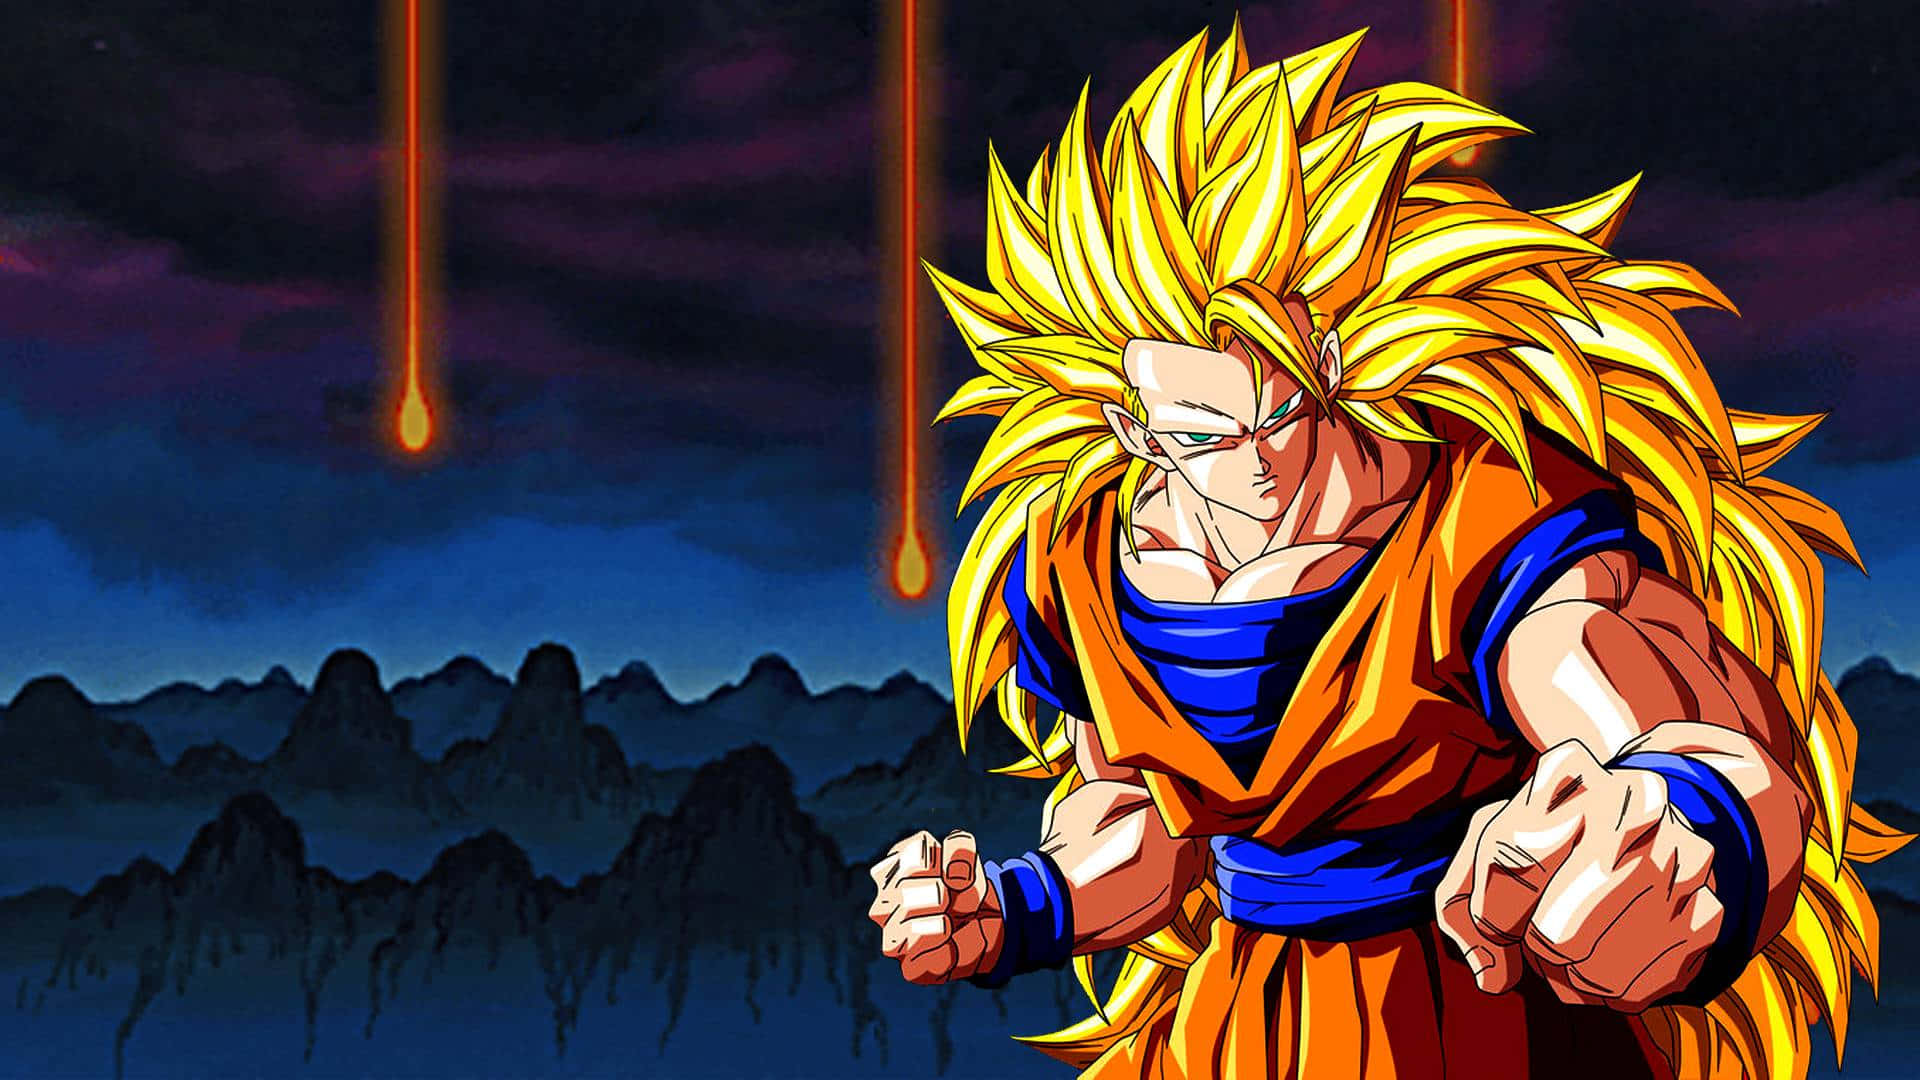 Goku and Vegeta Showdown in Dragon Ball Z